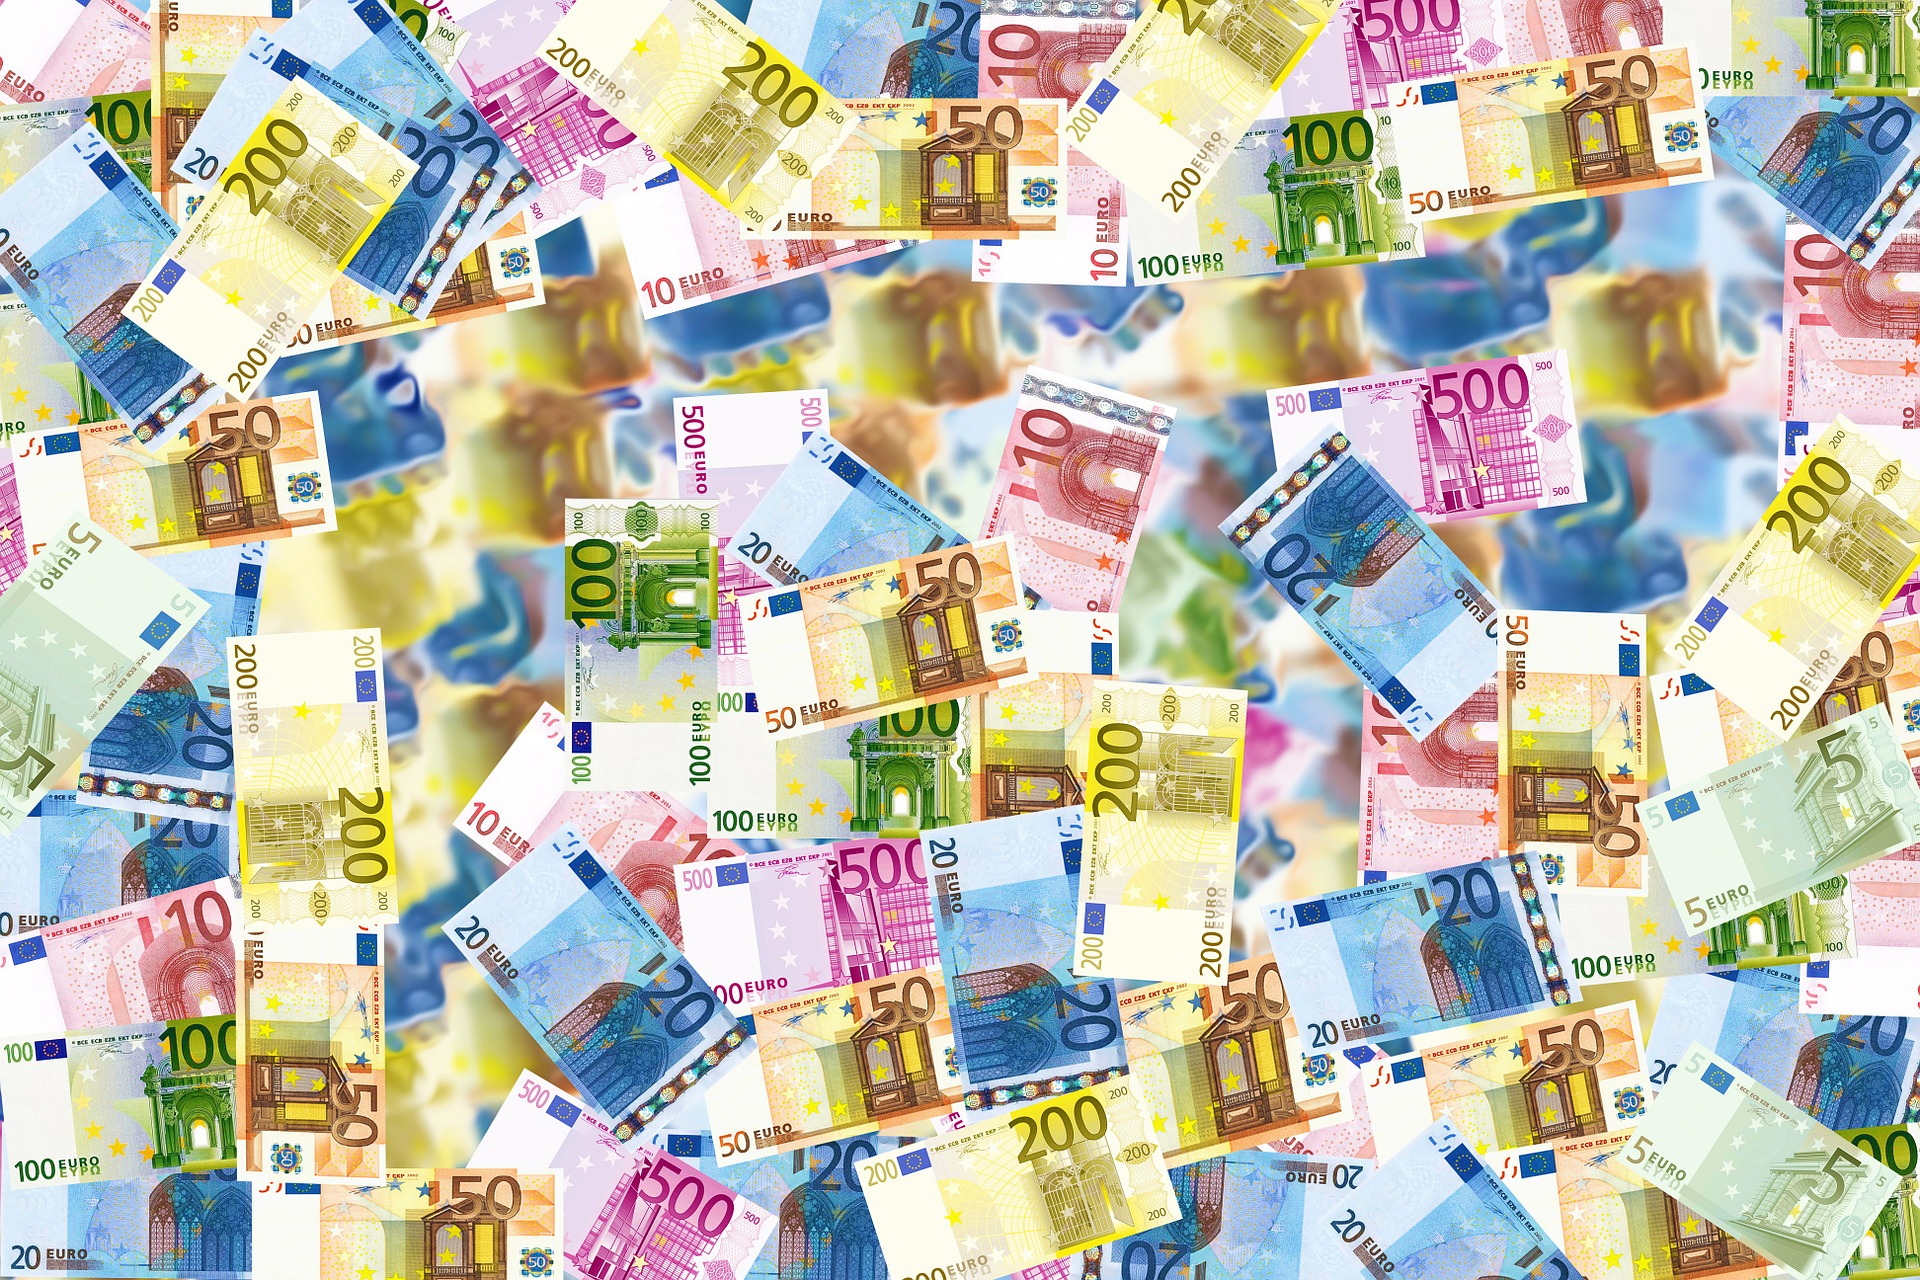 &#8220;Adriano Celentano artista italiano più ricco: patrimonio da 50 milioni di euro&#8221;